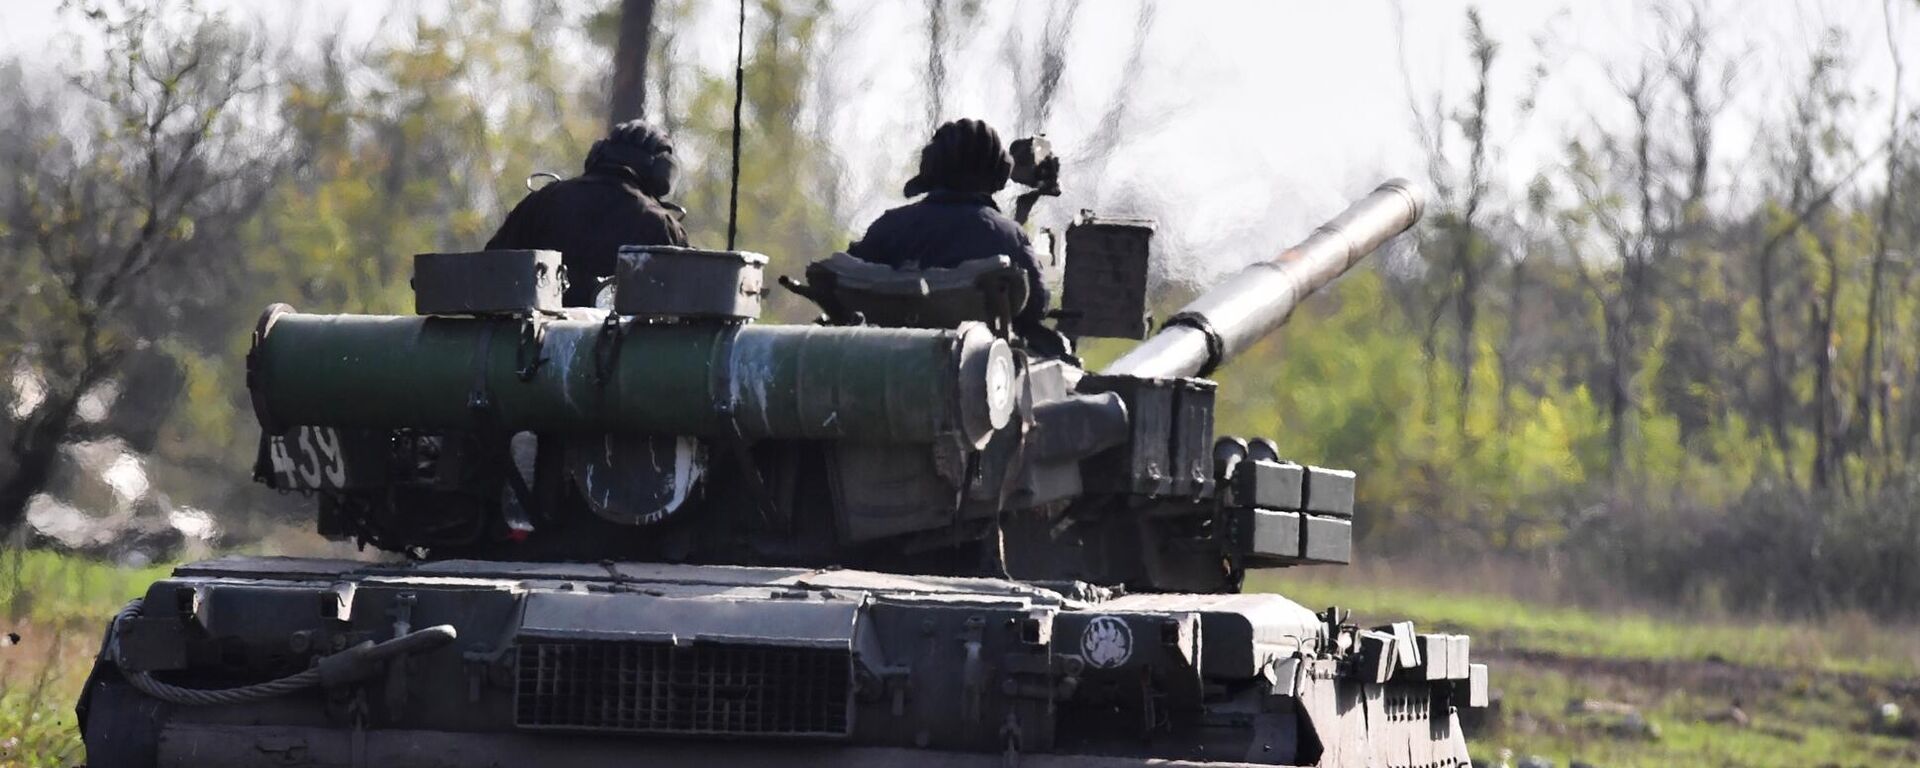 يتم إرسال دبابة تي-80 لإطلاق النار الحي في مواقع القوات المسلحة لأوكرانيا في منطقة دونيتسك - سبوتنيك عربي, 1920, 31.01.2023